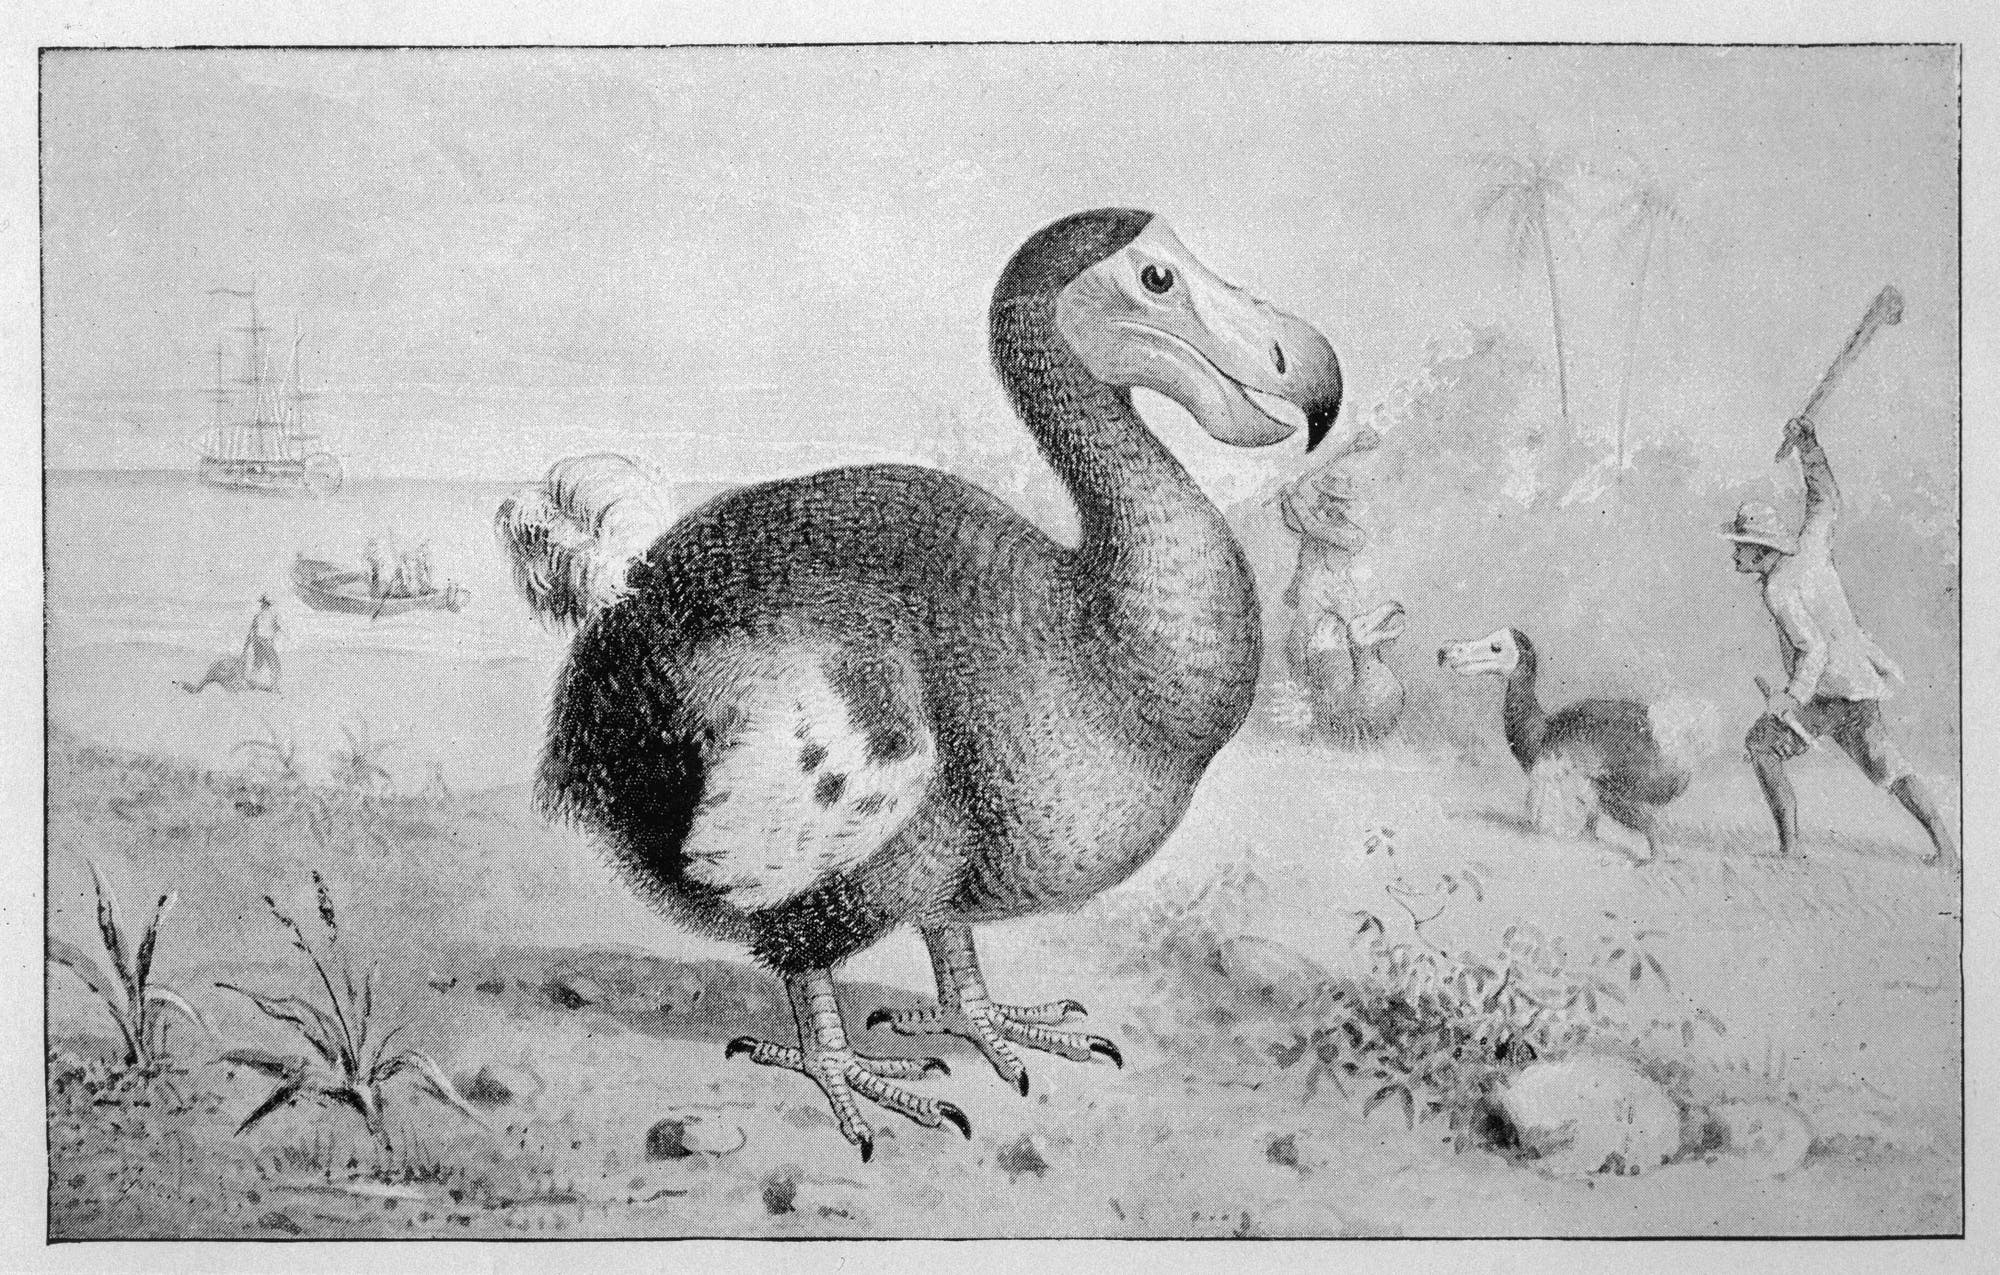 Der Dodo kannte keine Furcht